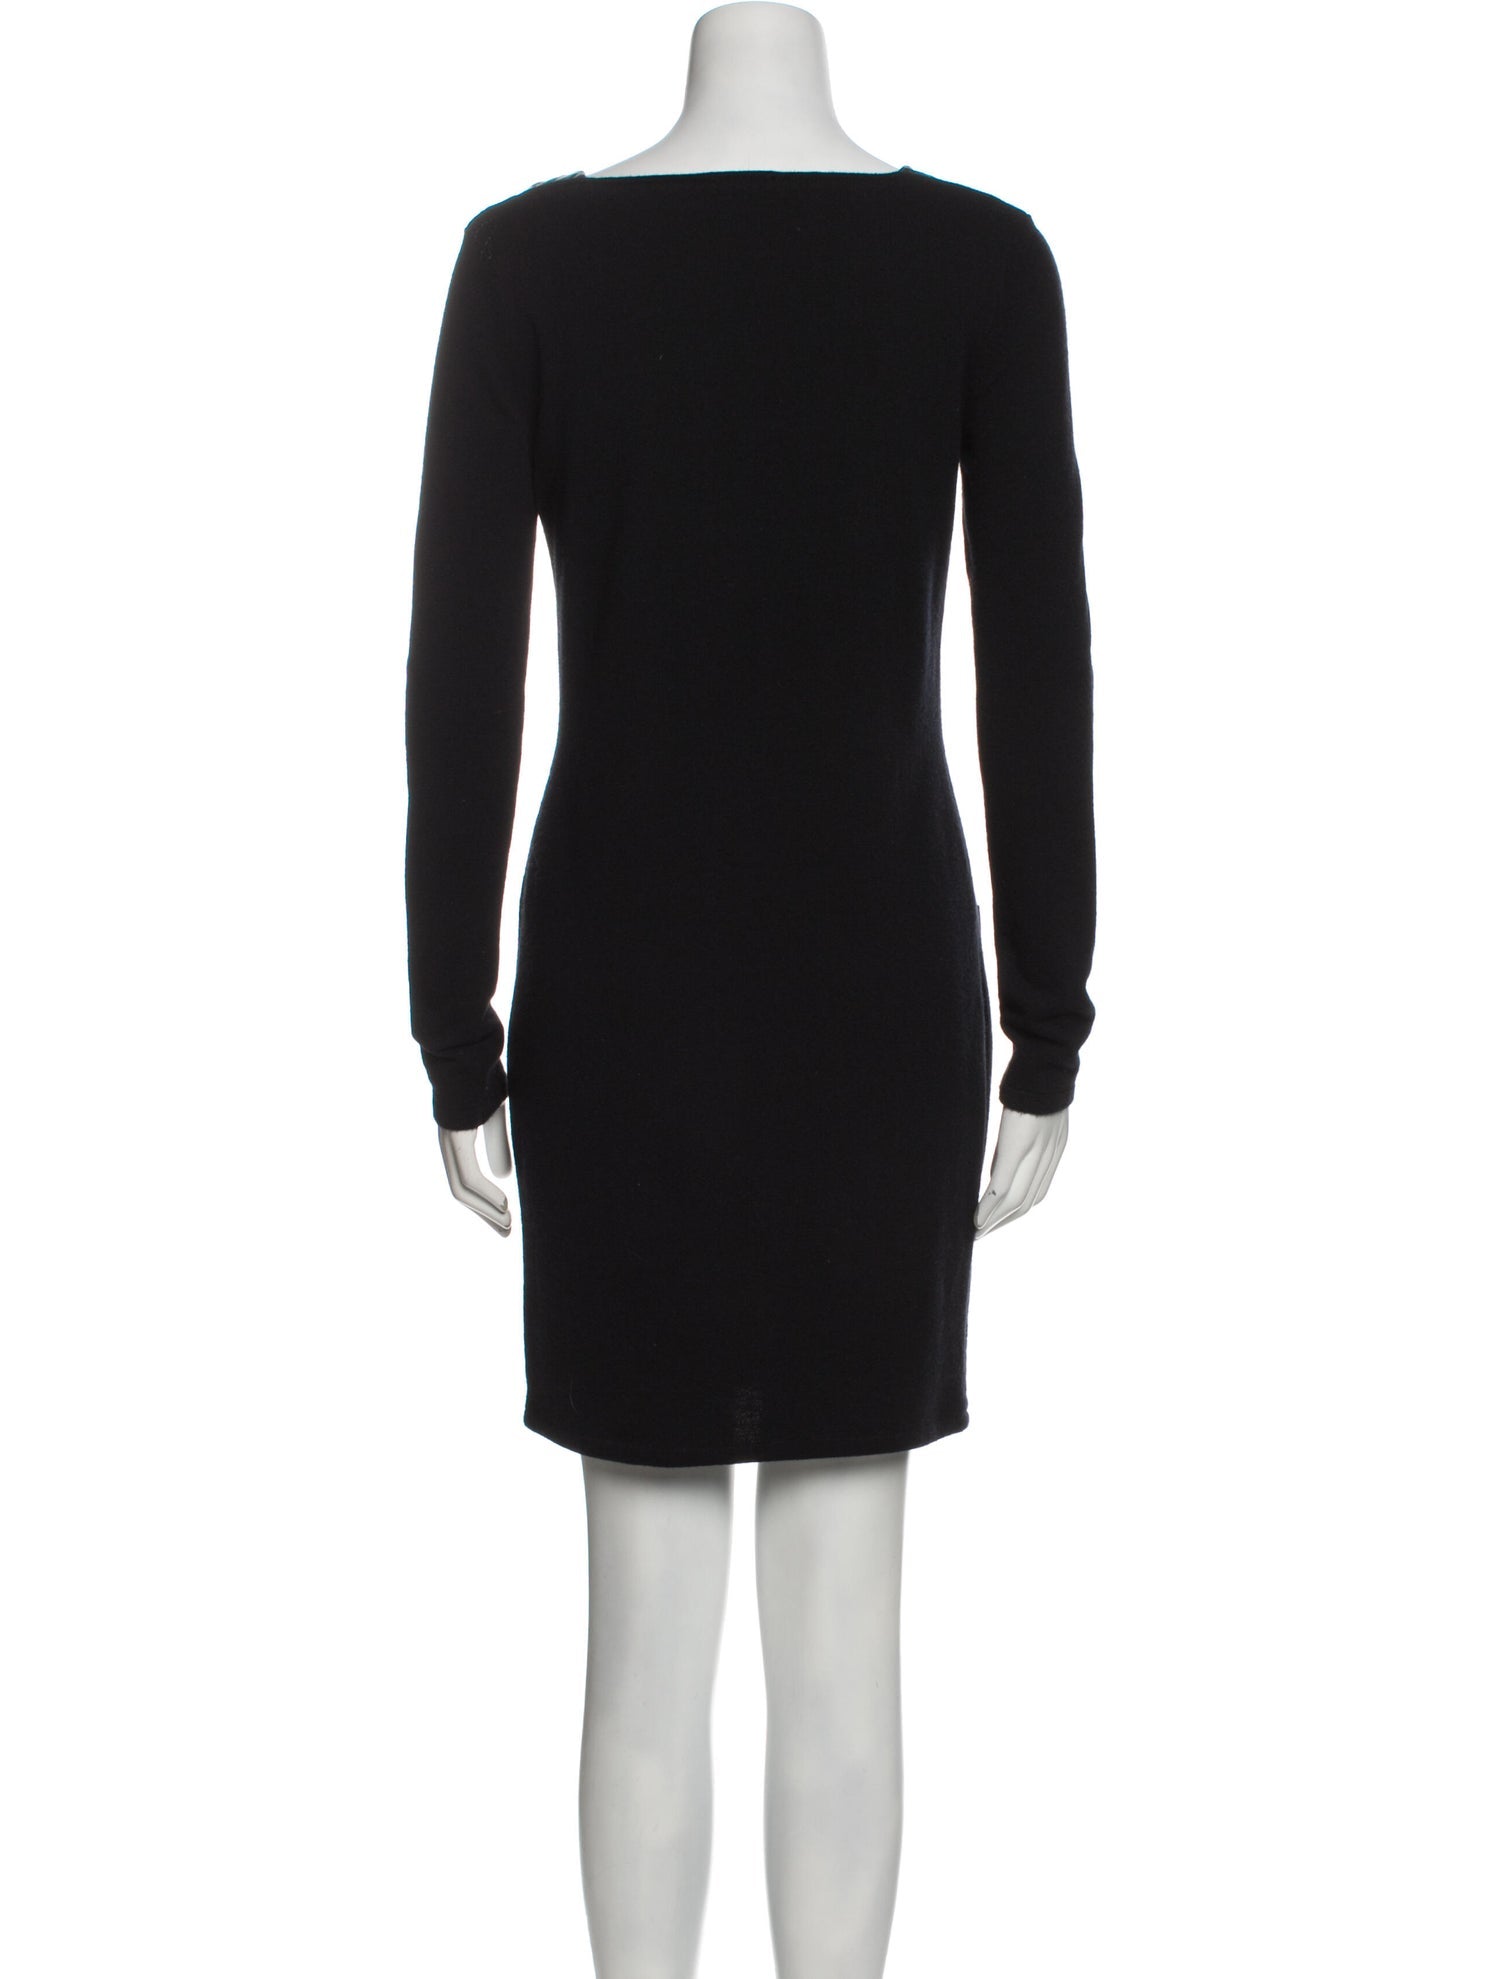 CHANEL 12A Black Wool Cashmere Lambskin Pocket Dress 34 36 シャネル  ブラック・ウール・カシミア・ラムスキン レザー マトラッセ・ポケット・ワンピース 即発